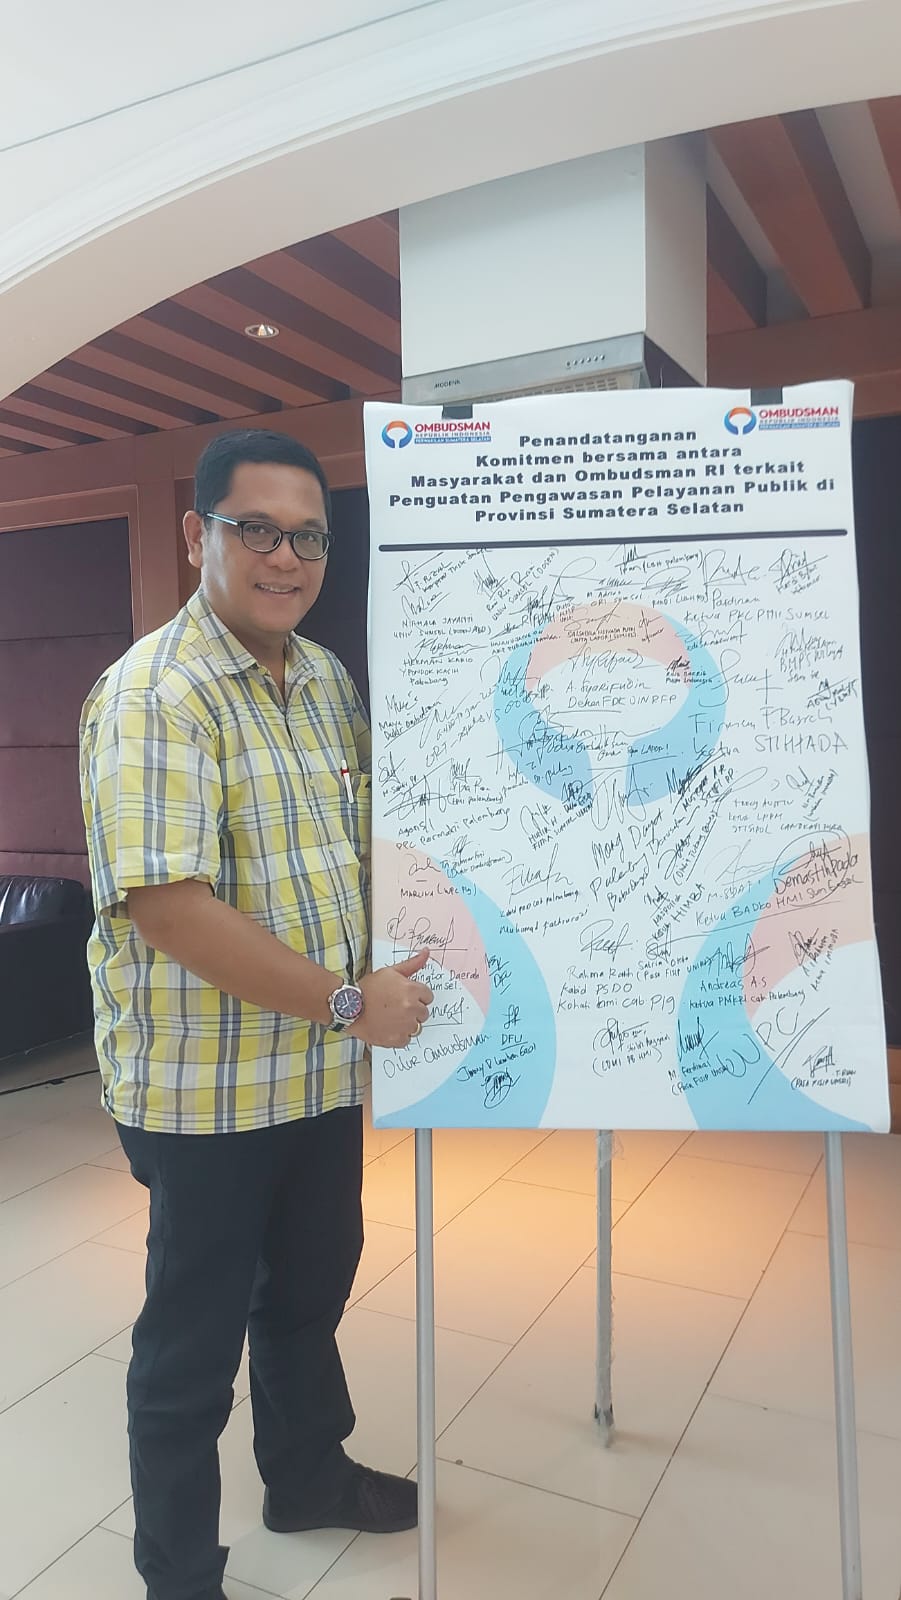 Ombudsman Sumsel mengadakan Diskusi Pengawasan Pelayanan bersama Tokoh Masyarakat dan Pemuda Palembang